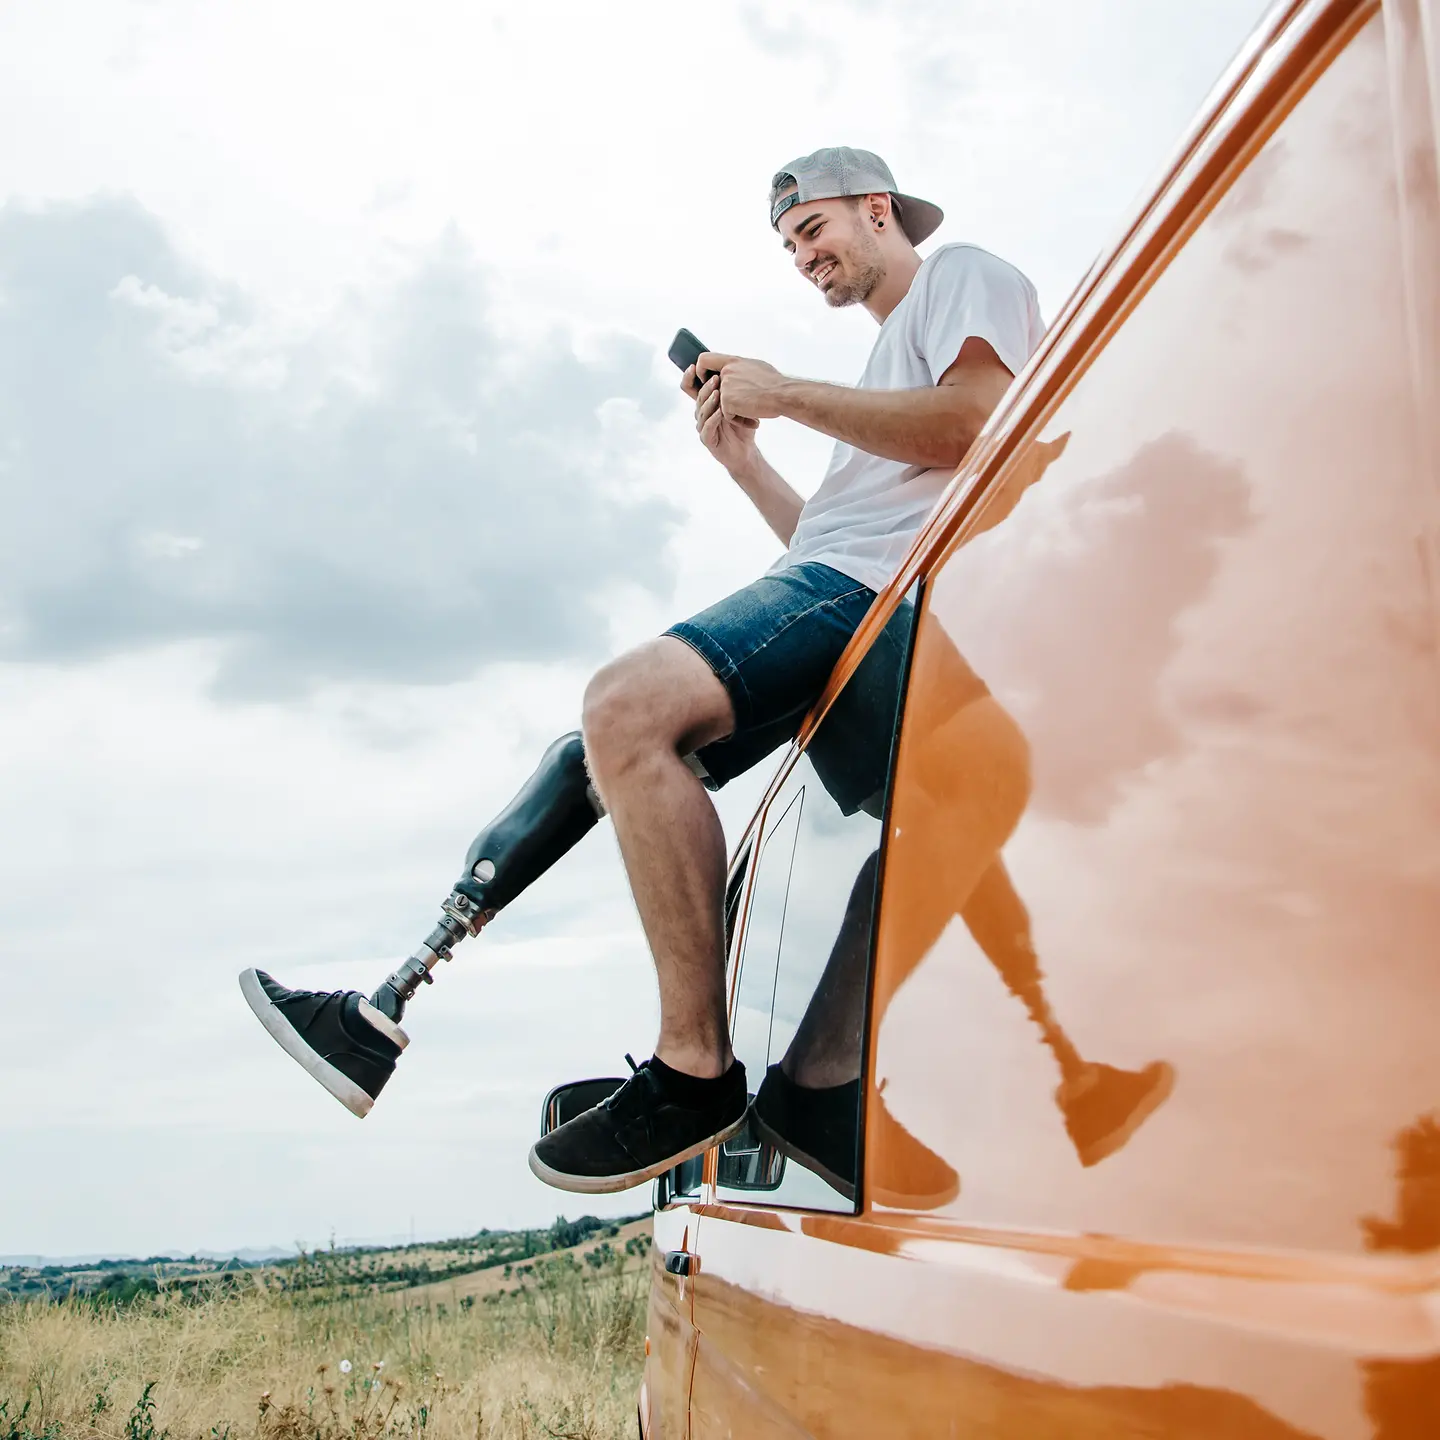 Ein junger Mann mit Beinprothesen auf dem Autodach